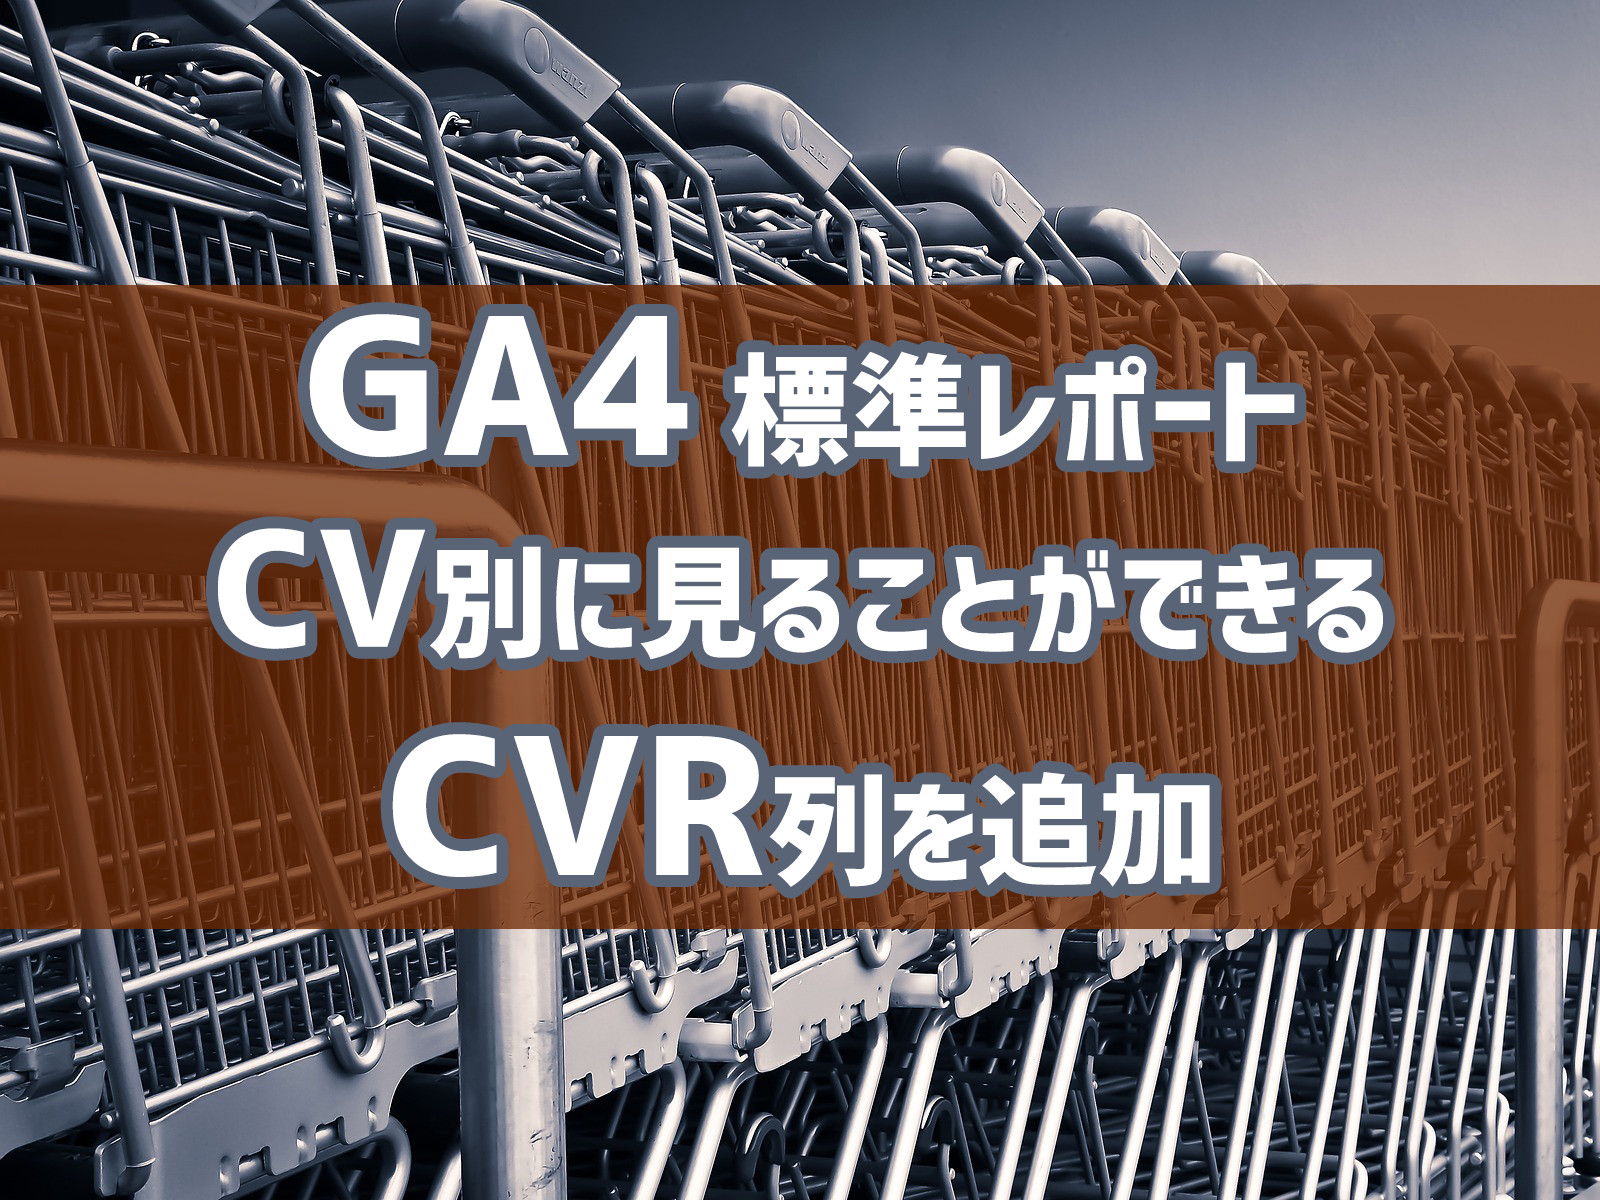 Cover Image for GA4 標準レポート CV別に見ることができるCVR列を追加